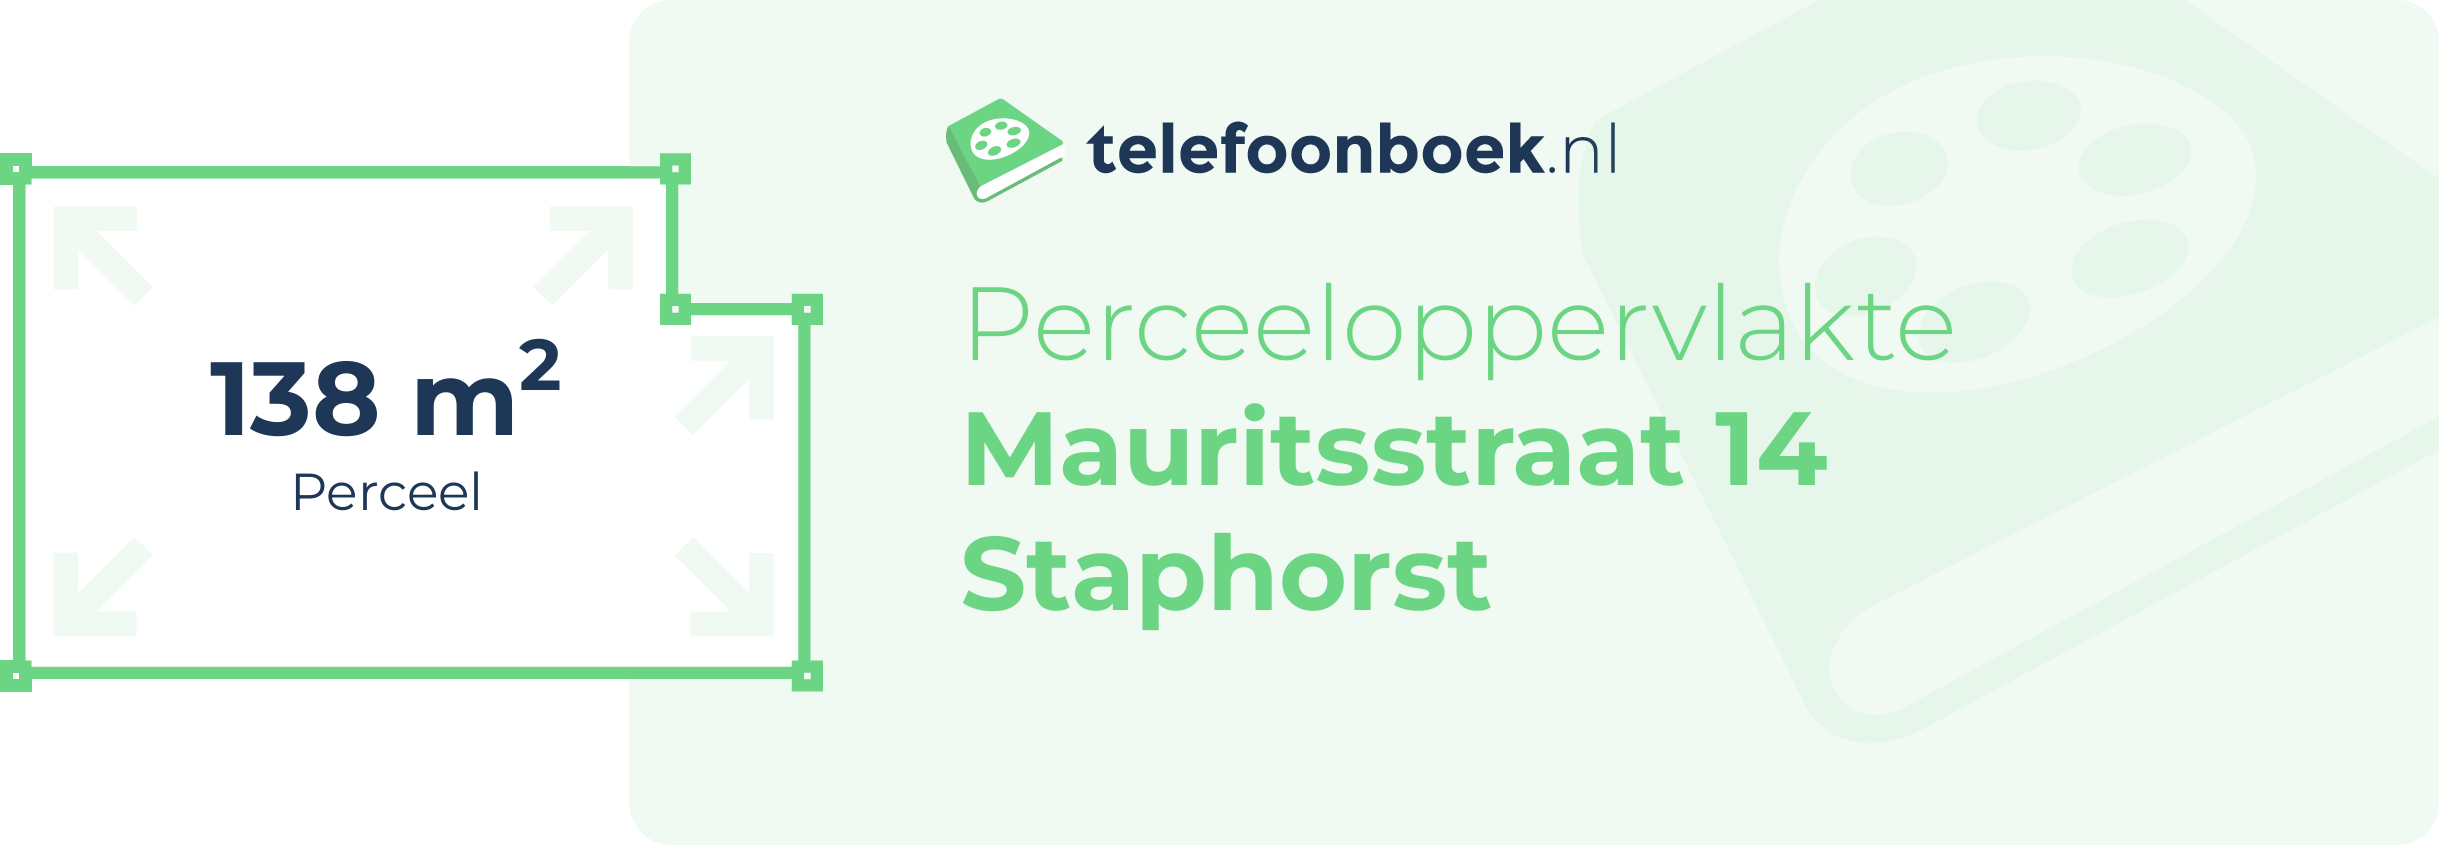 Perceeloppervlakte Mauritsstraat 14 Staphorst